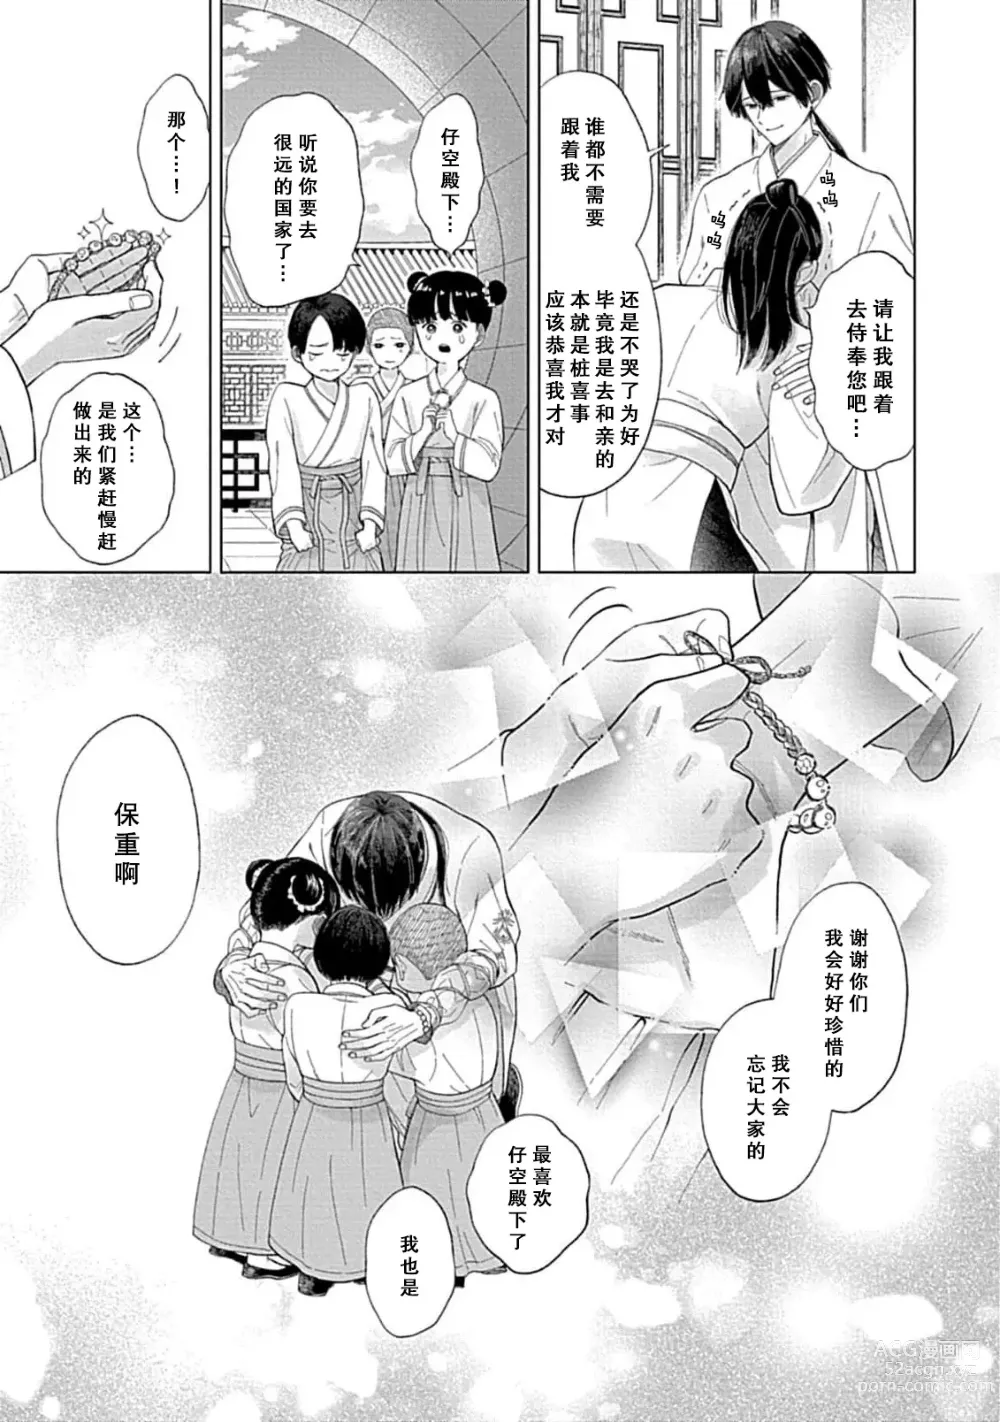 Page 17 of manga 花嫁的堇青石~篡位的狮子王和纯洁的皇子~ 1